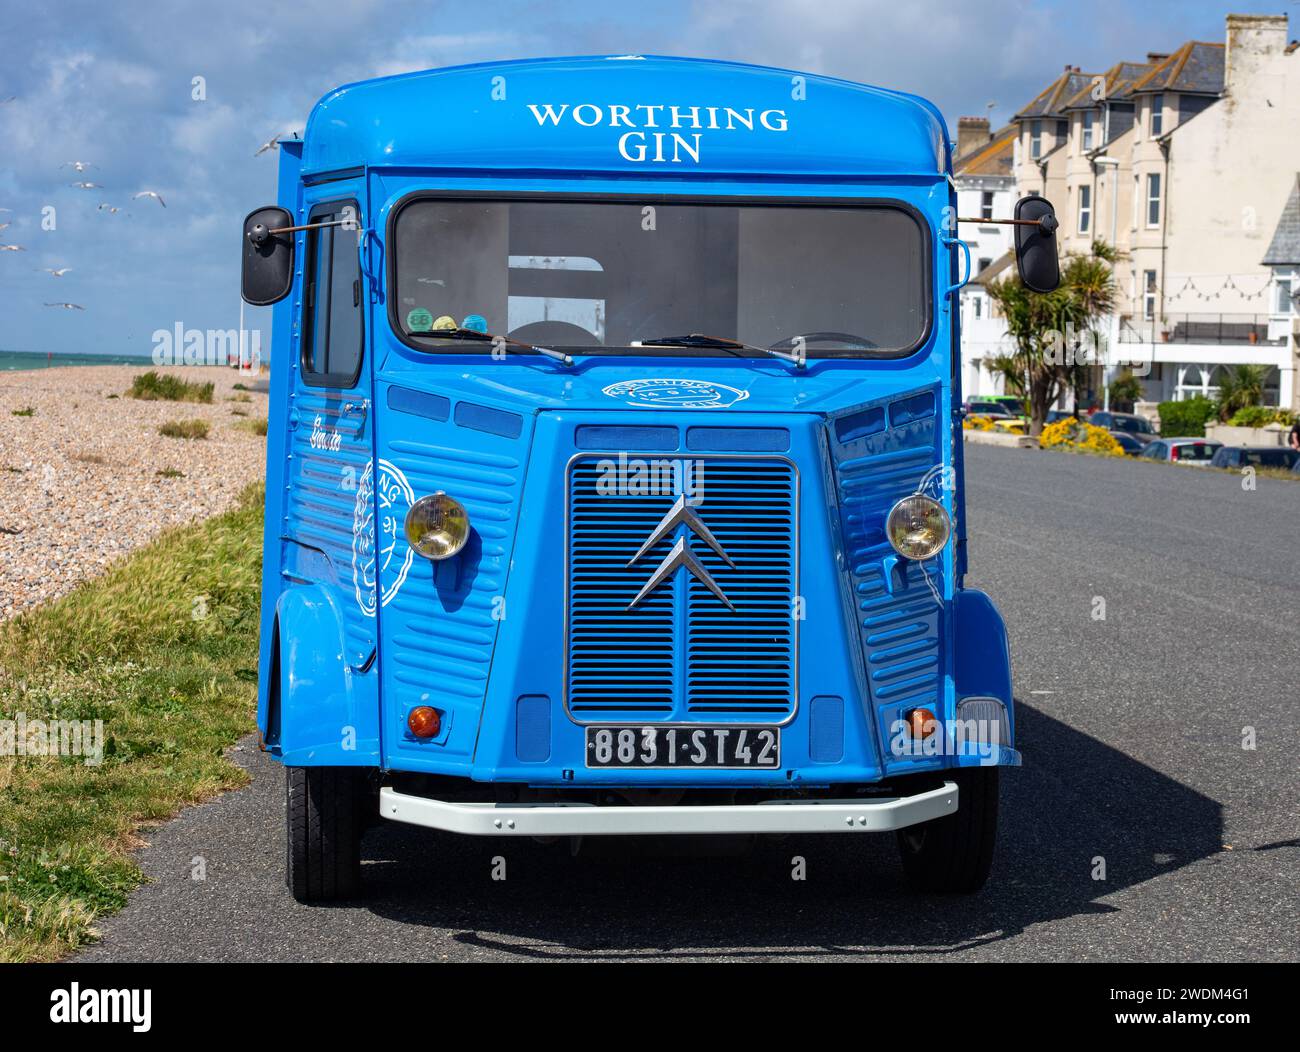 Worthing gin bleu Citroen H van sur le front de mer à Worthing West Sussex UK Banque D'Images